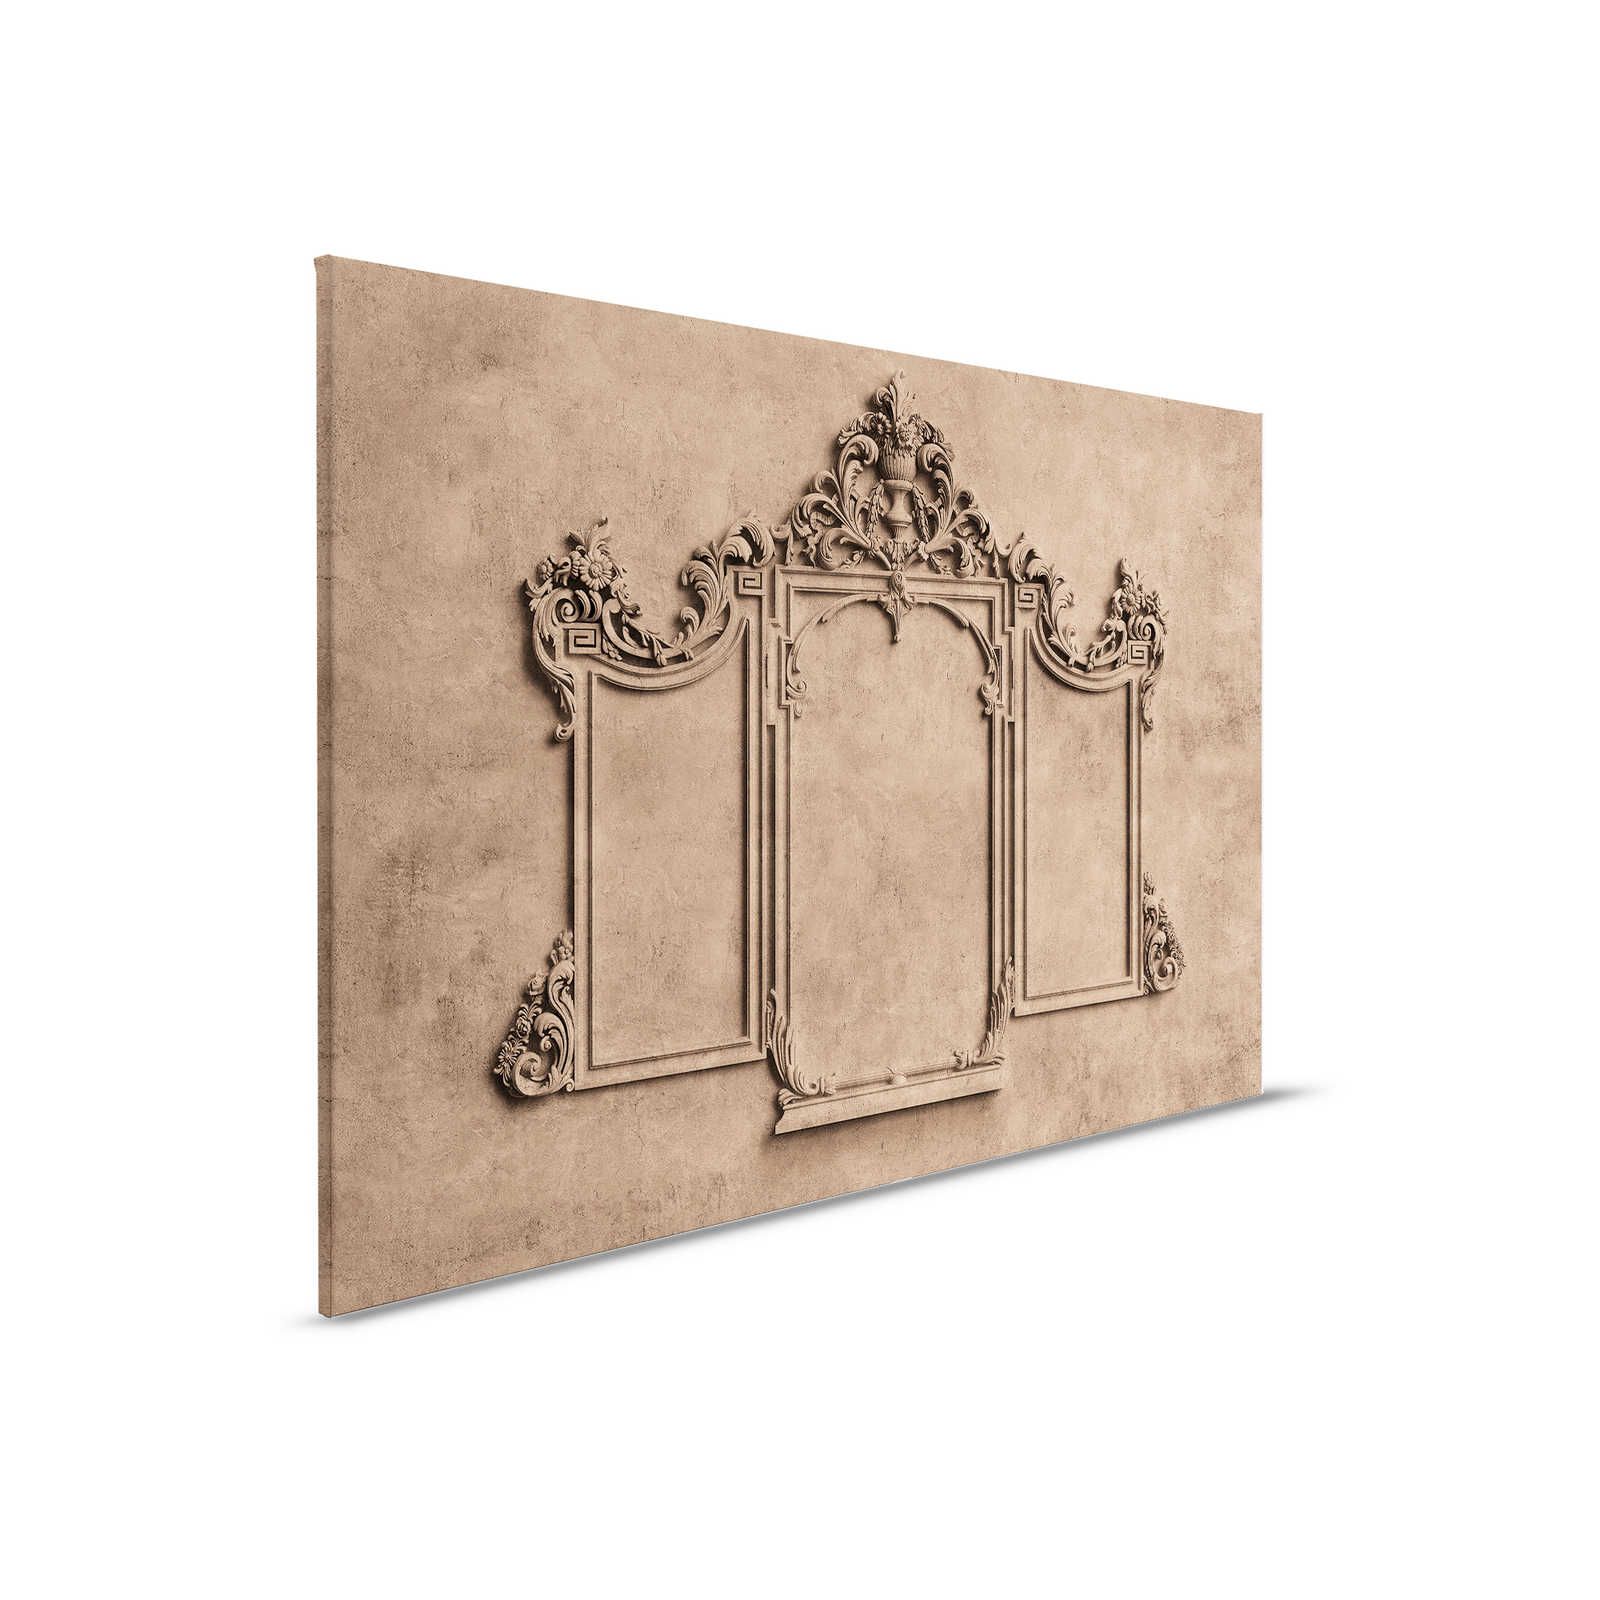 Lyon 1 - Toile 3D cadre stuc & aspect plâtre marron - 0,90 m x 0,60 m
